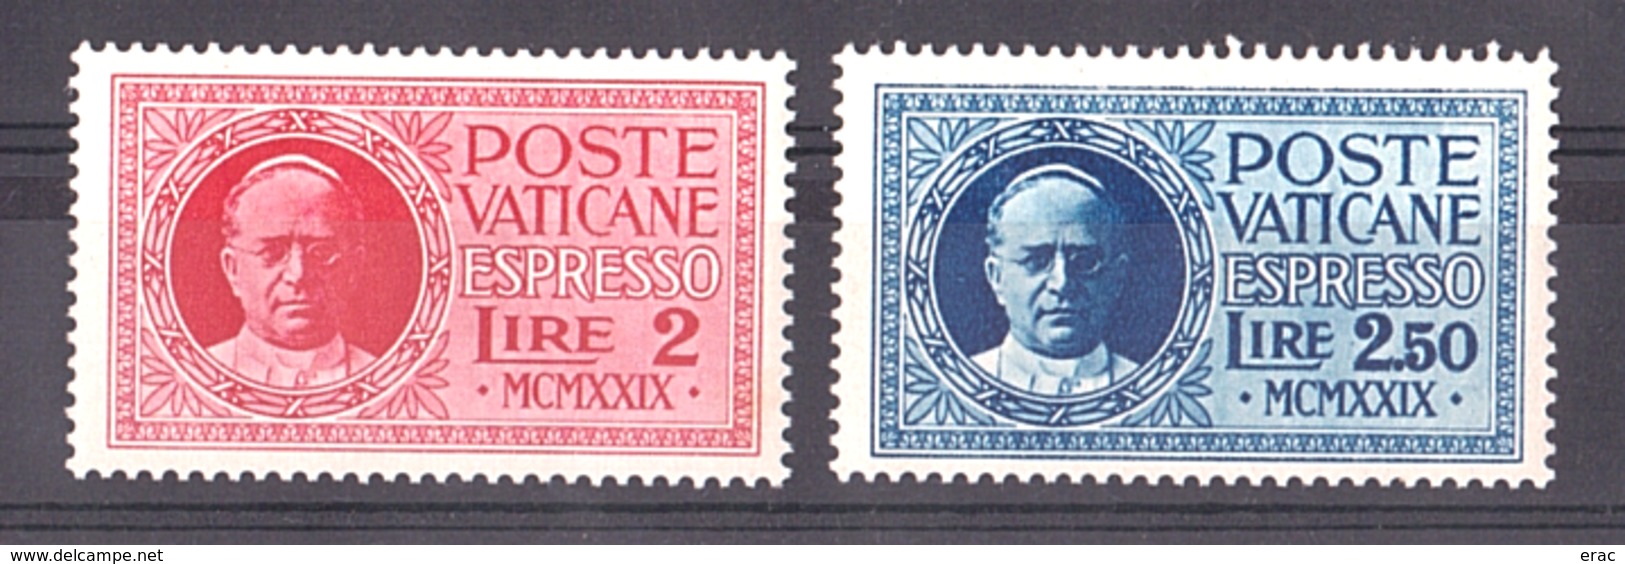 Vatican - 1929 - Timbres Par Exprès N° 1 Et 2 - Neufs * - Pie XI - Eilsendung (Eilpost)